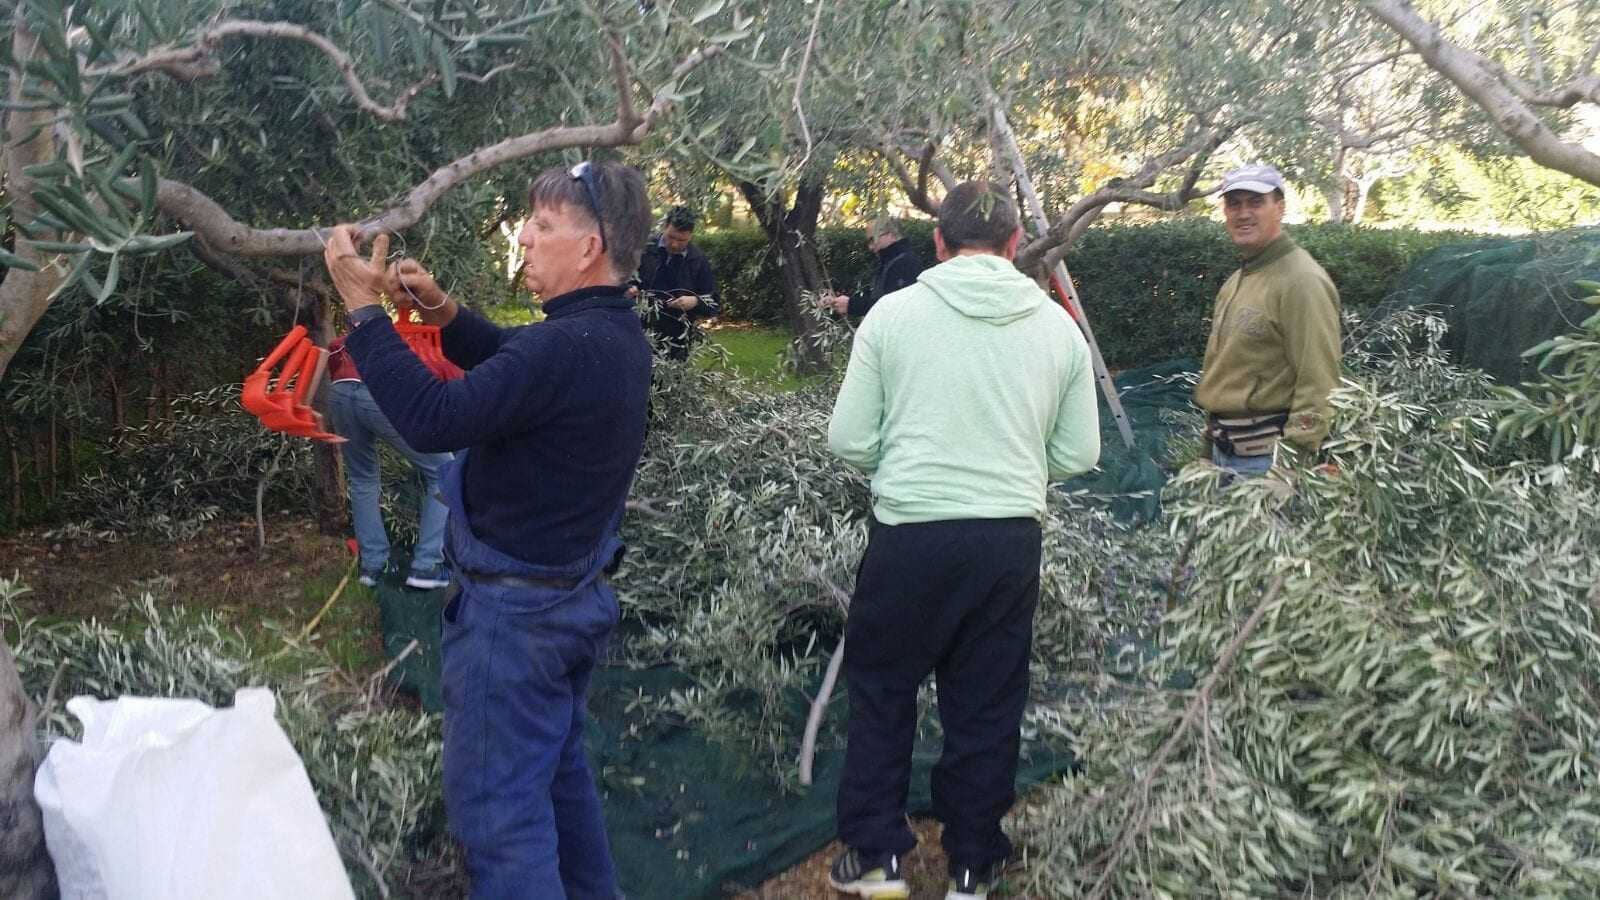 Европа-мир-производство-добровольцы-протянет-руку-в-италии-оливковый-урожай-чтобы-помочь-тем-в-нуждающемся-время-оливкового-масла